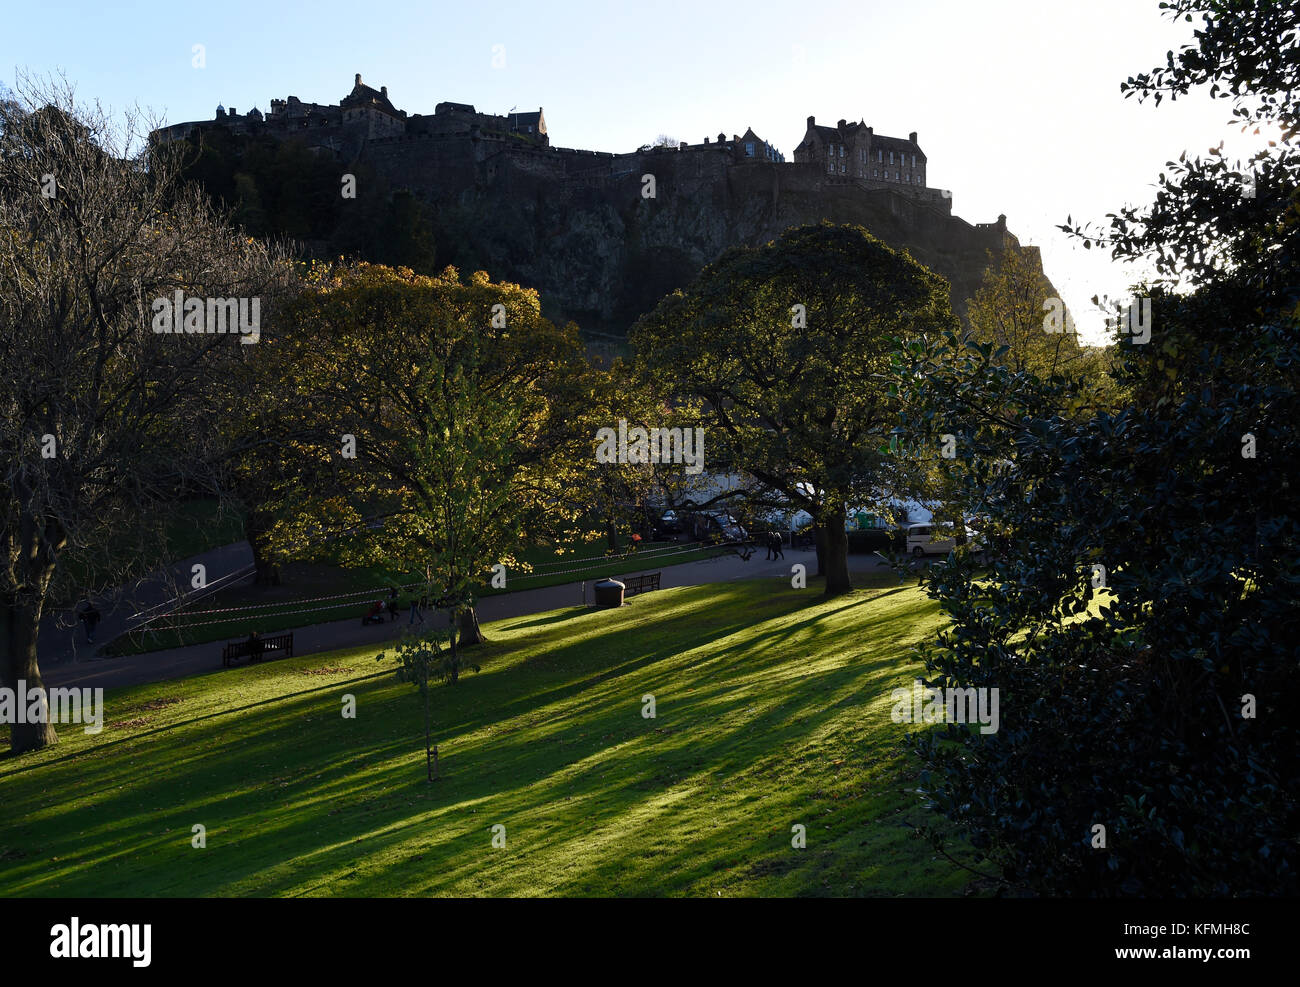 La luce solare bassa getta ombre attraverso gli alberi nei giardini di Princes street, con il Castello di Edimburgo stagliano in background. Foto Stock